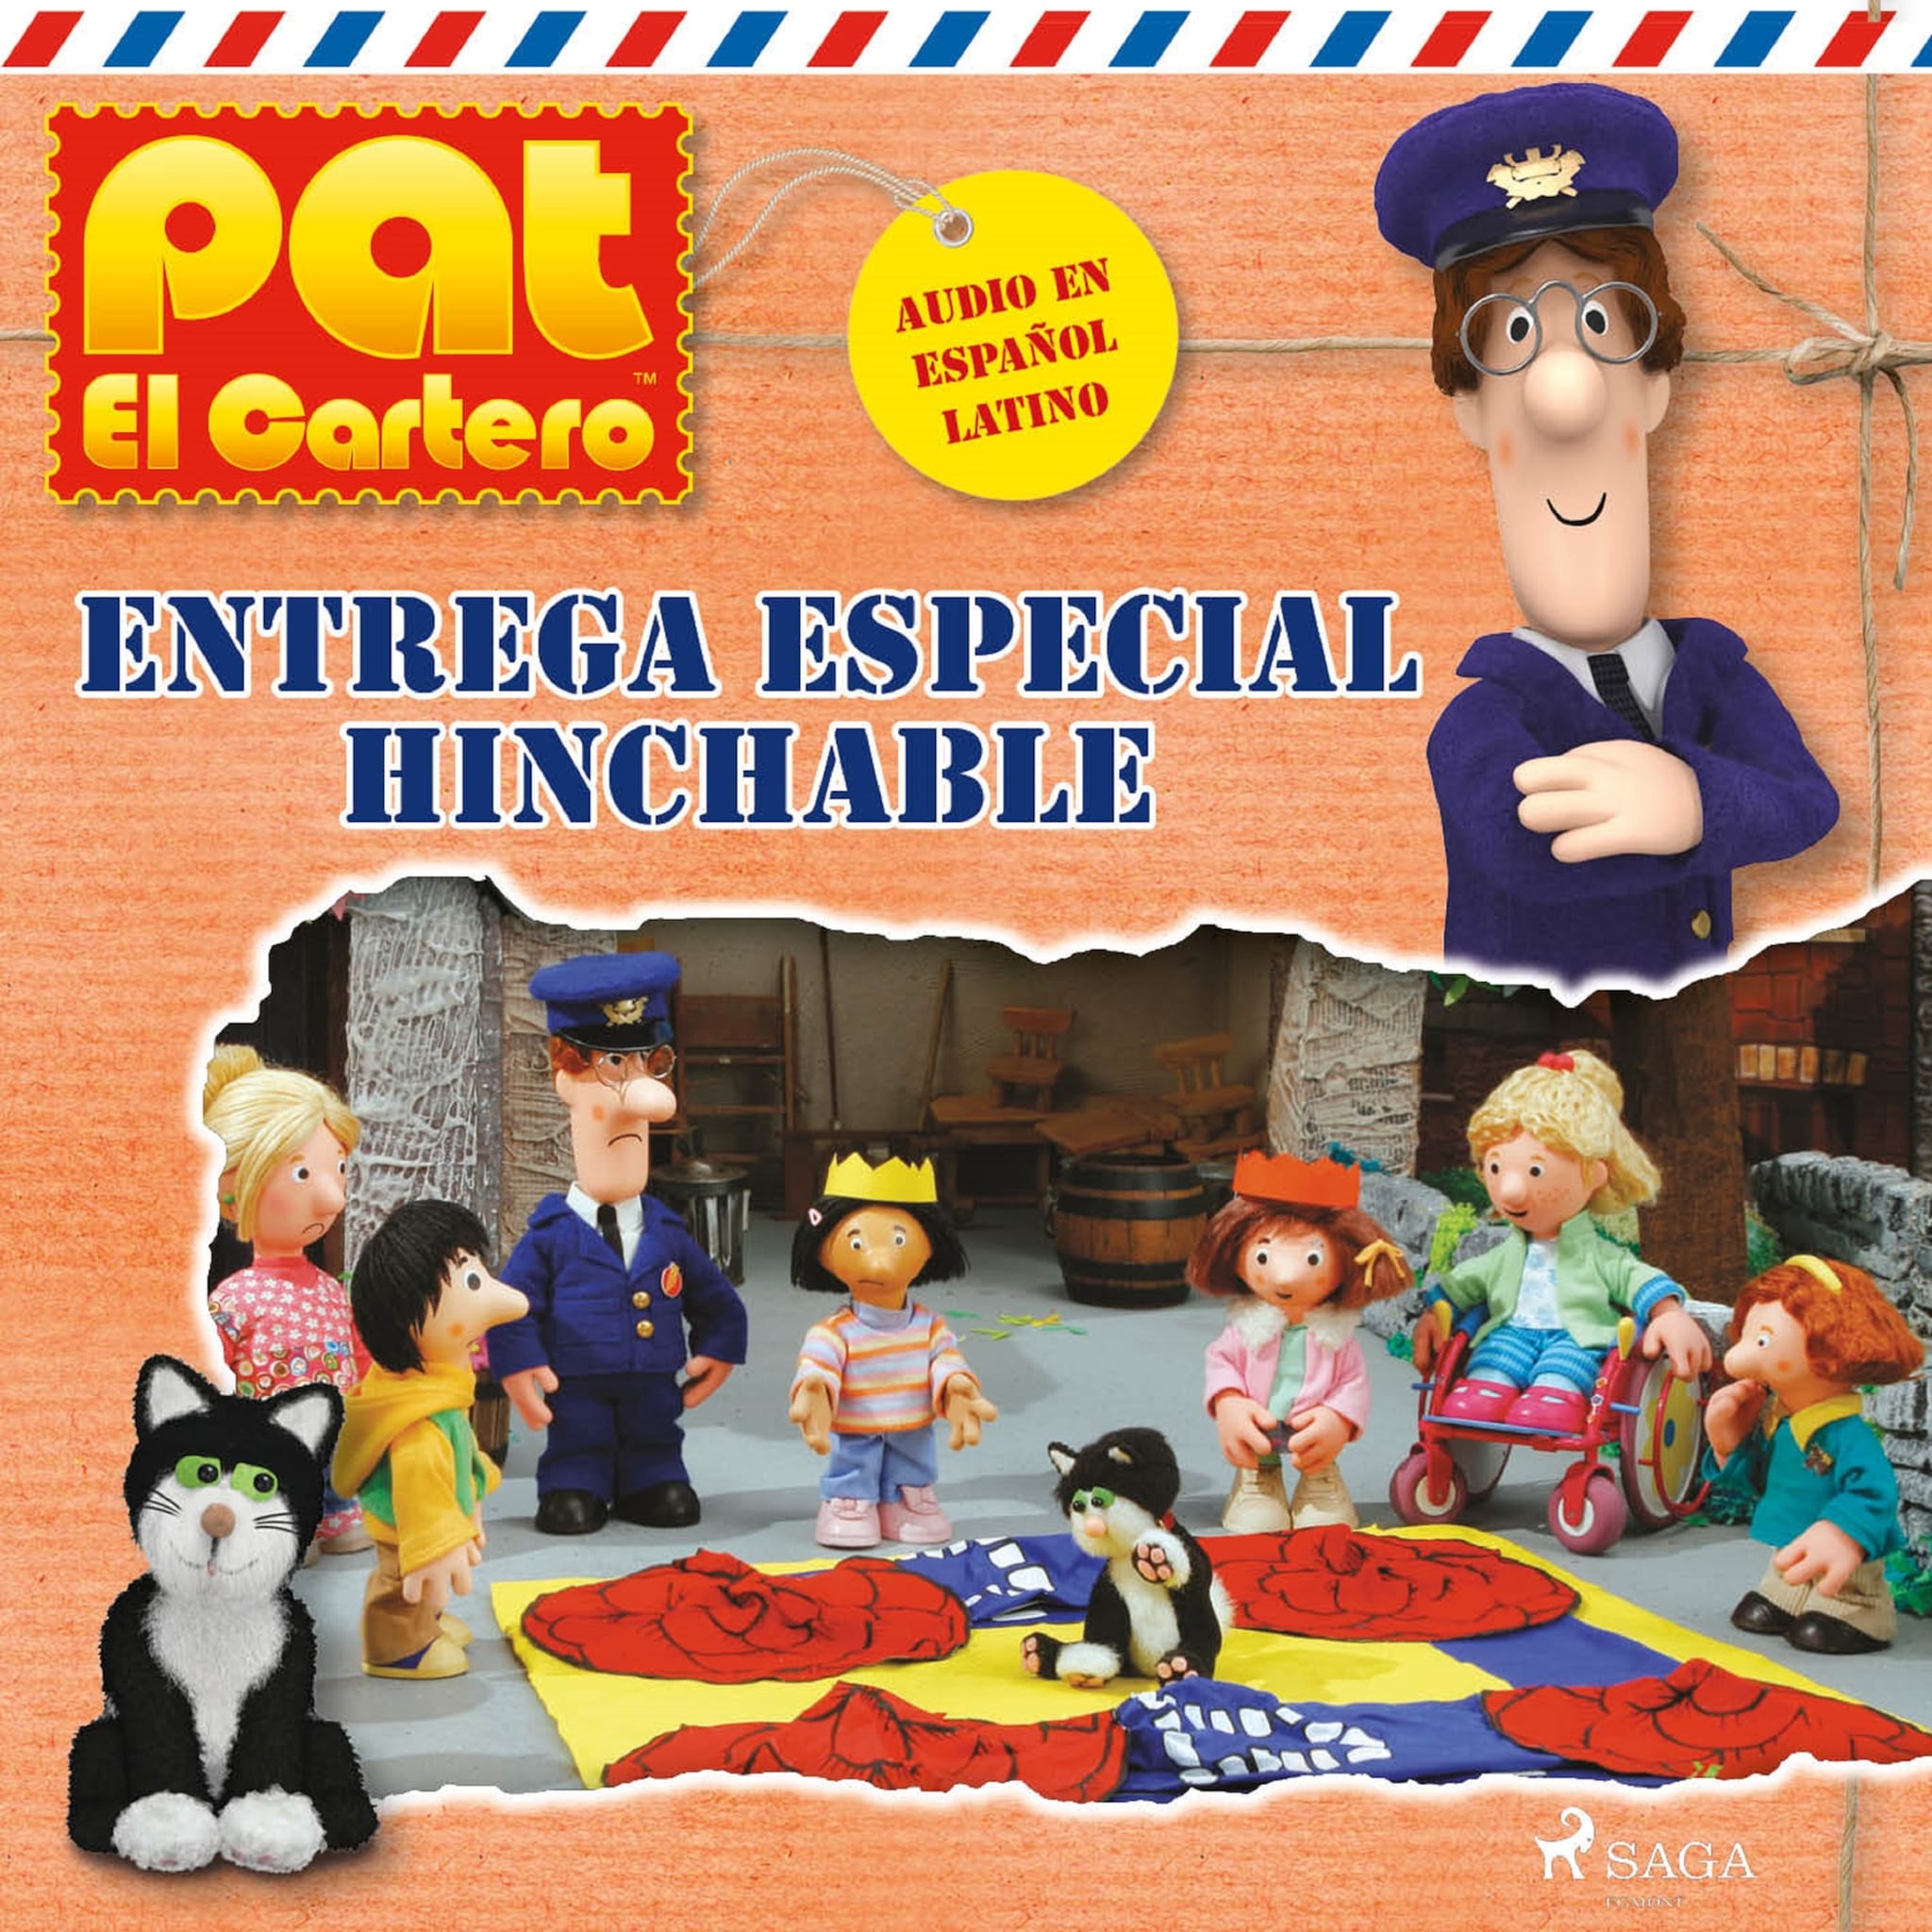 Pat el cartero – Entrega especial hinchable ilmaiseksi